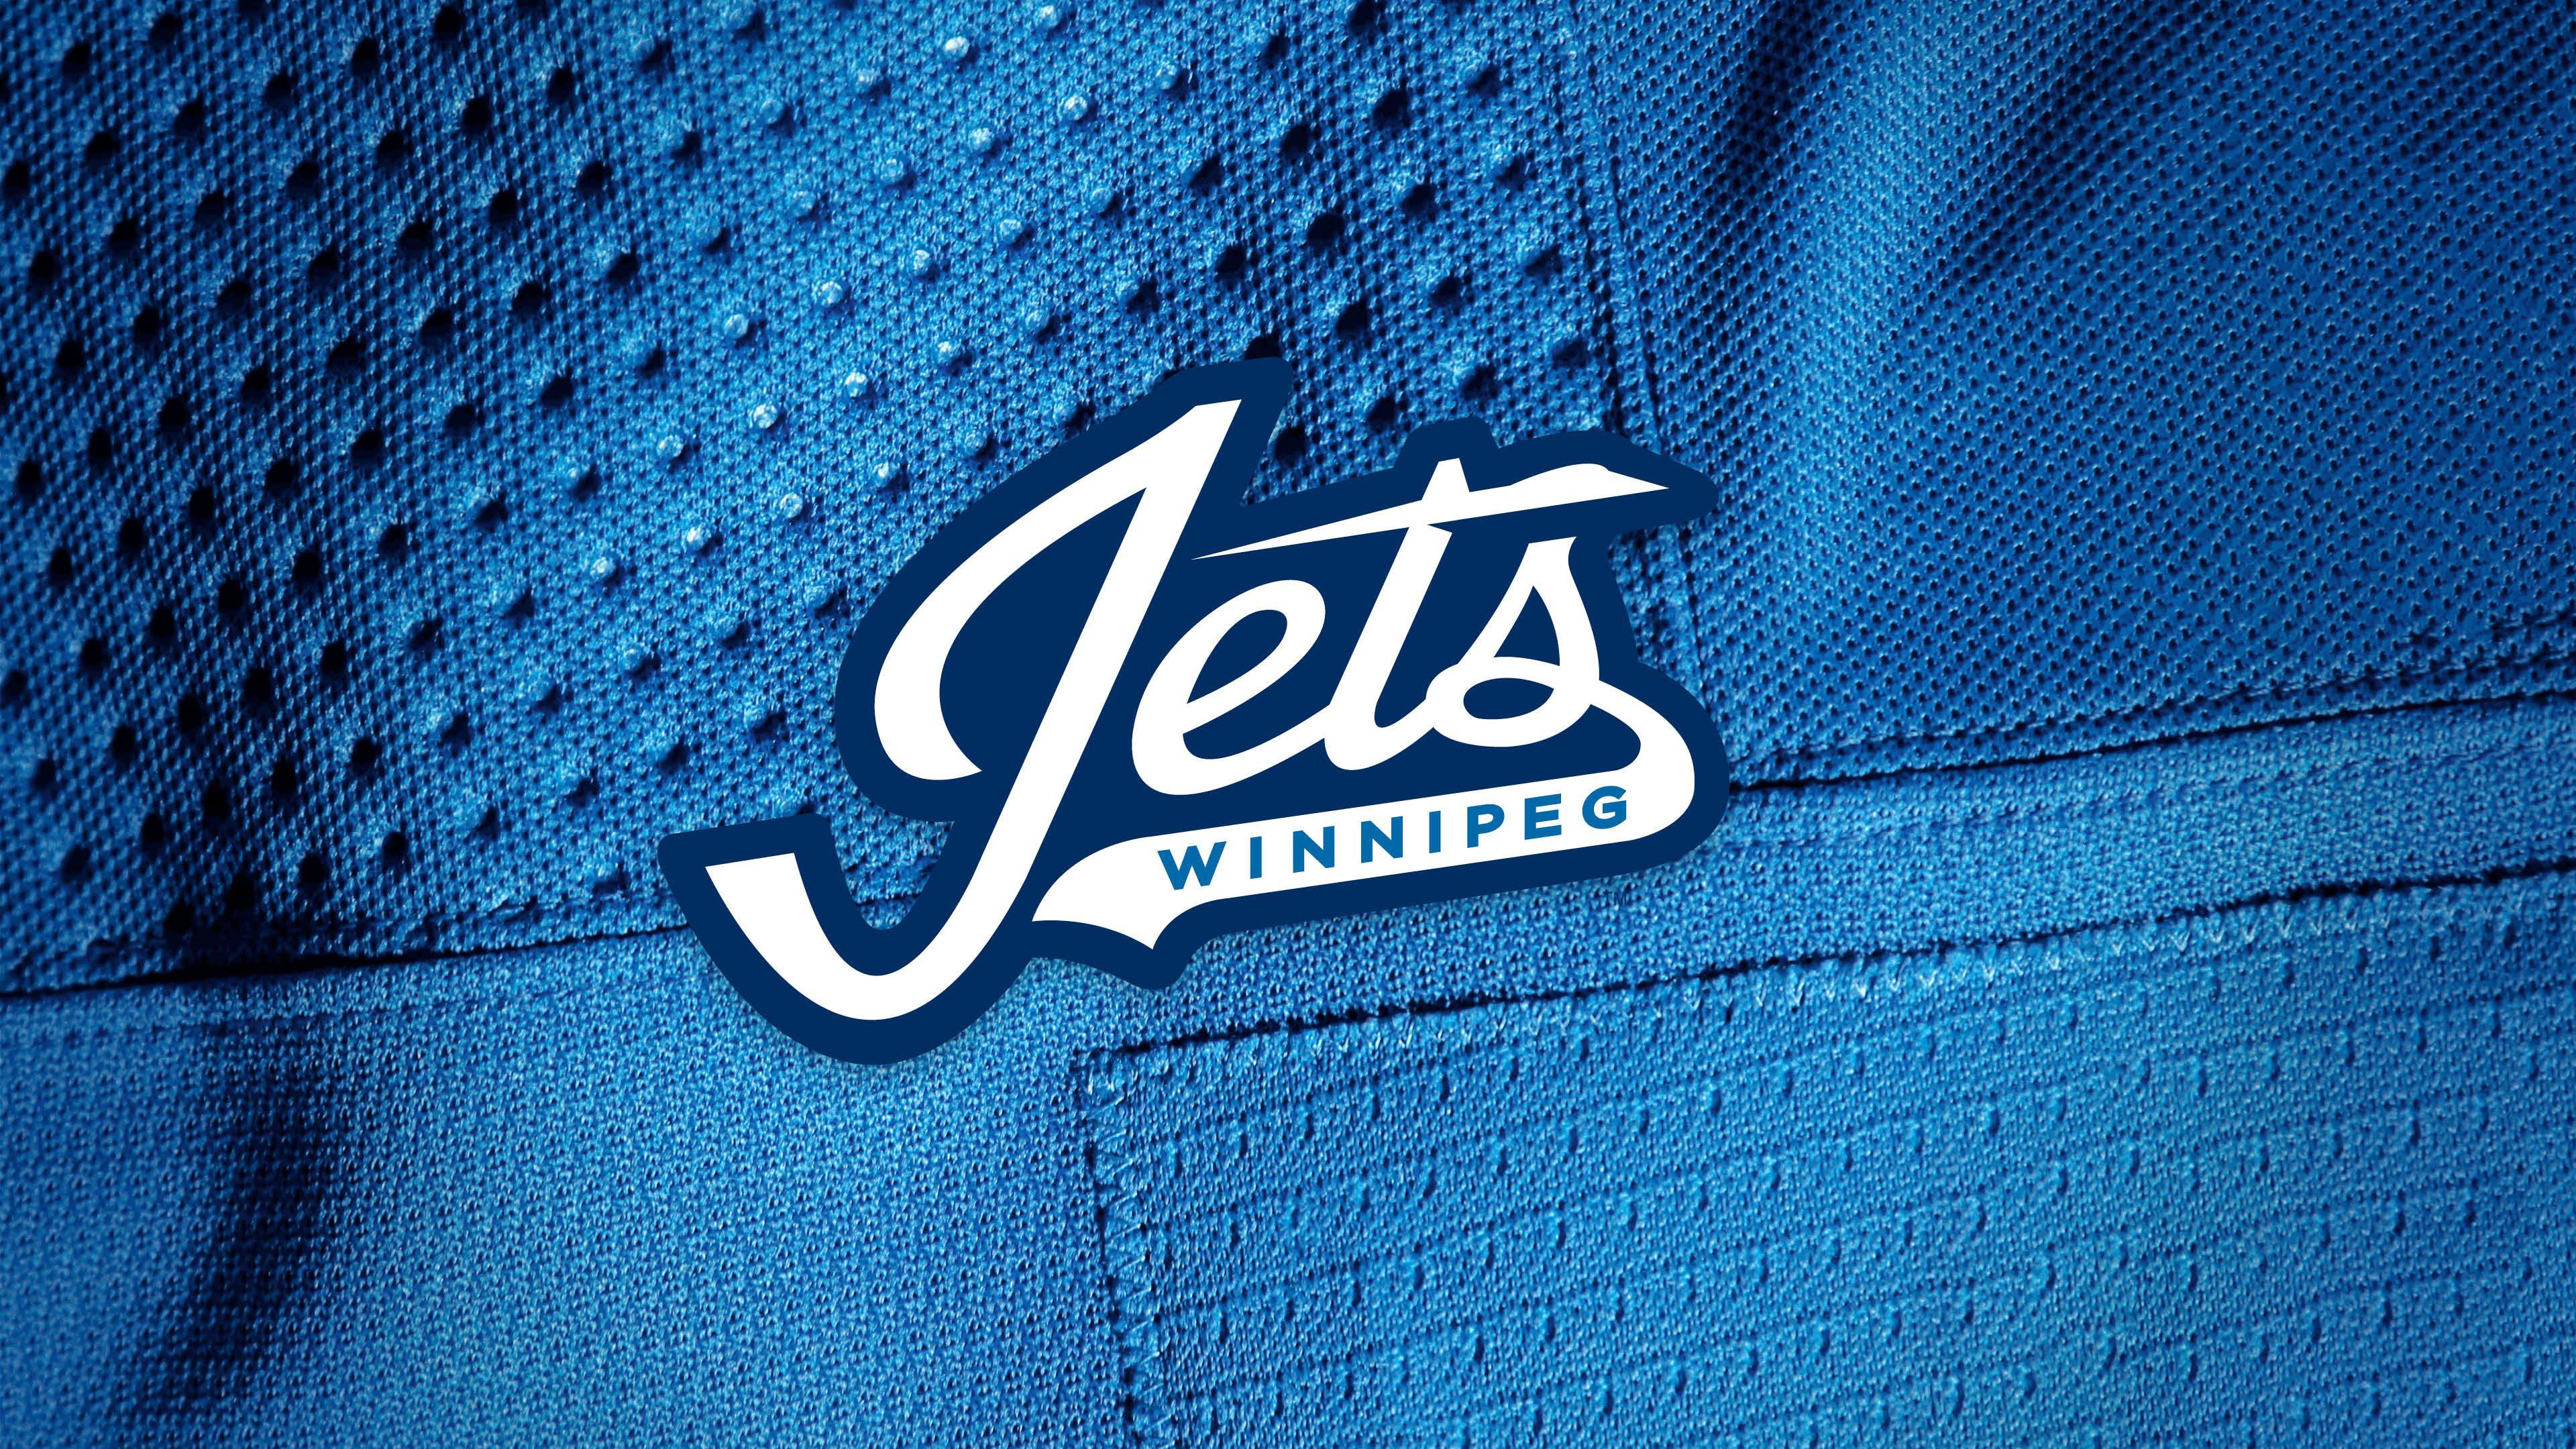 NHL Jets Logo - Desktop & Mobile Wallpapers | Winnipeg Jets